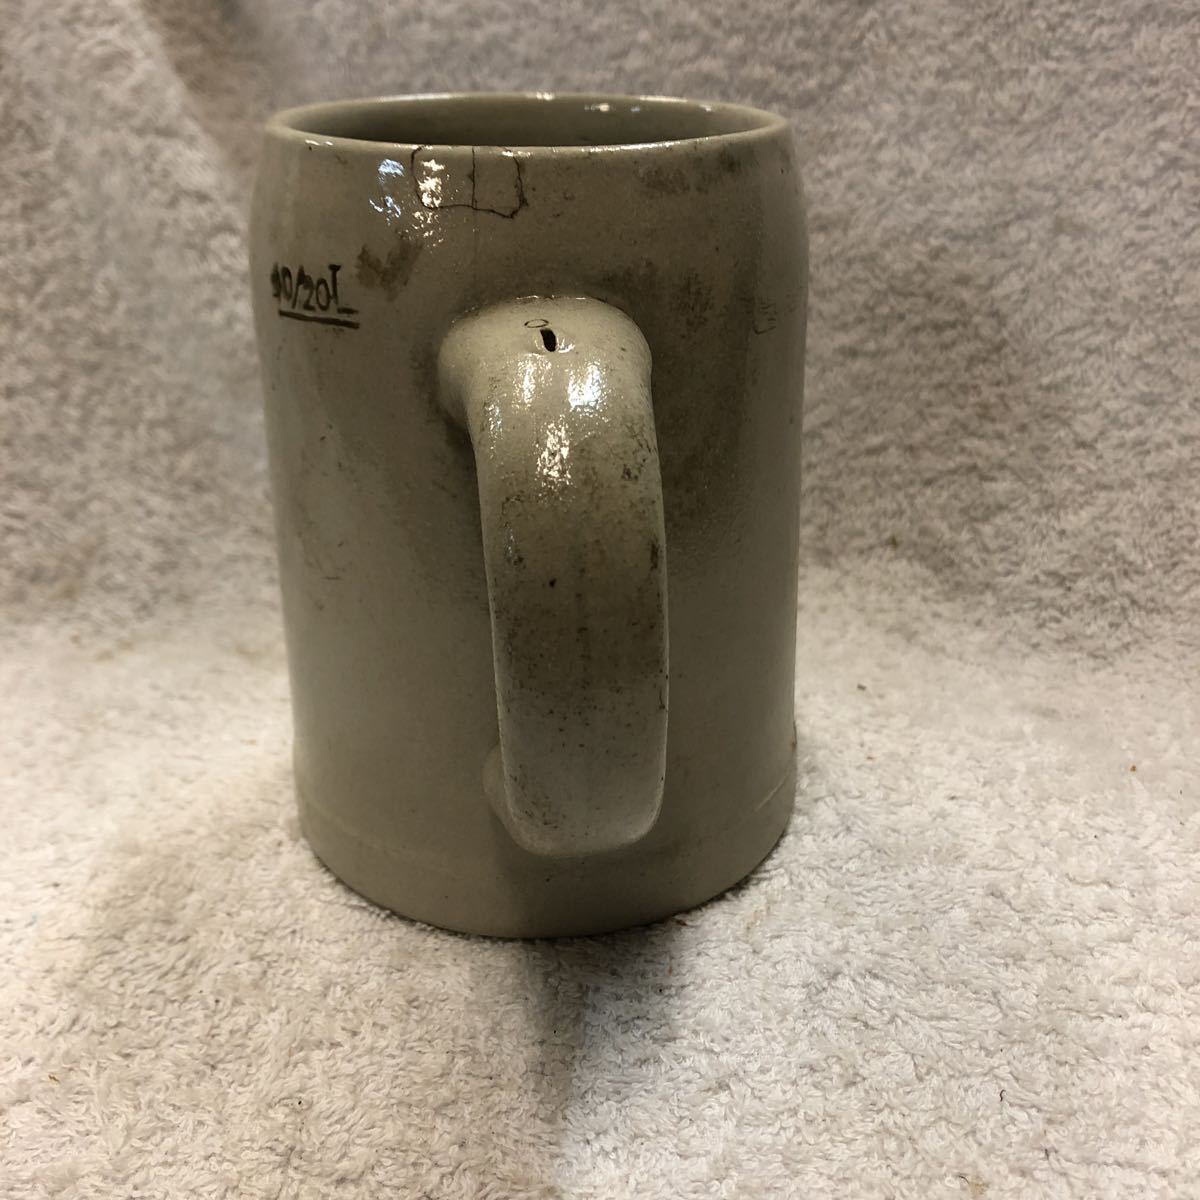  beer jug beer mug Okt - bar fe -stroke shupa- ton used [19/12 A-0]